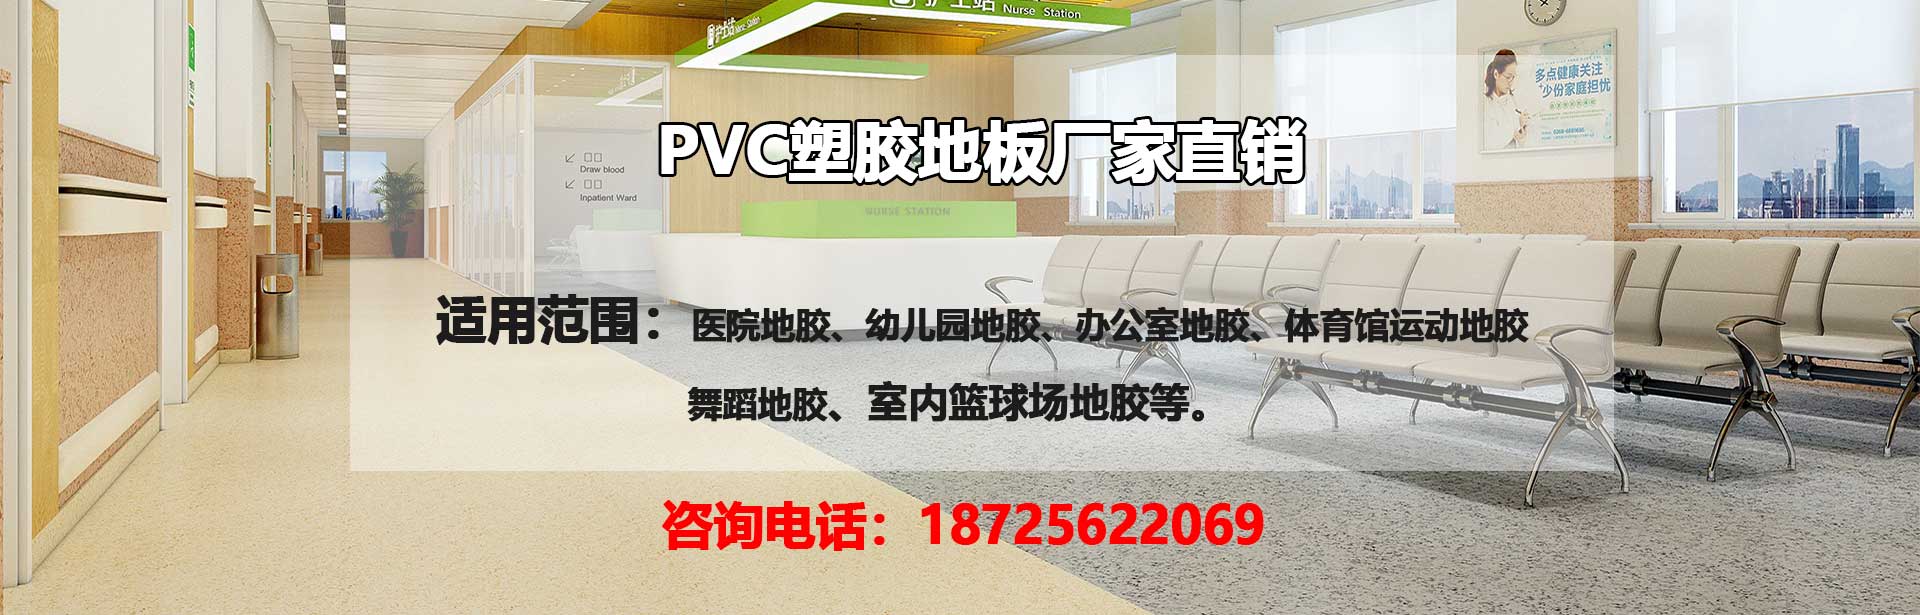 佛山PVC塑胶地板